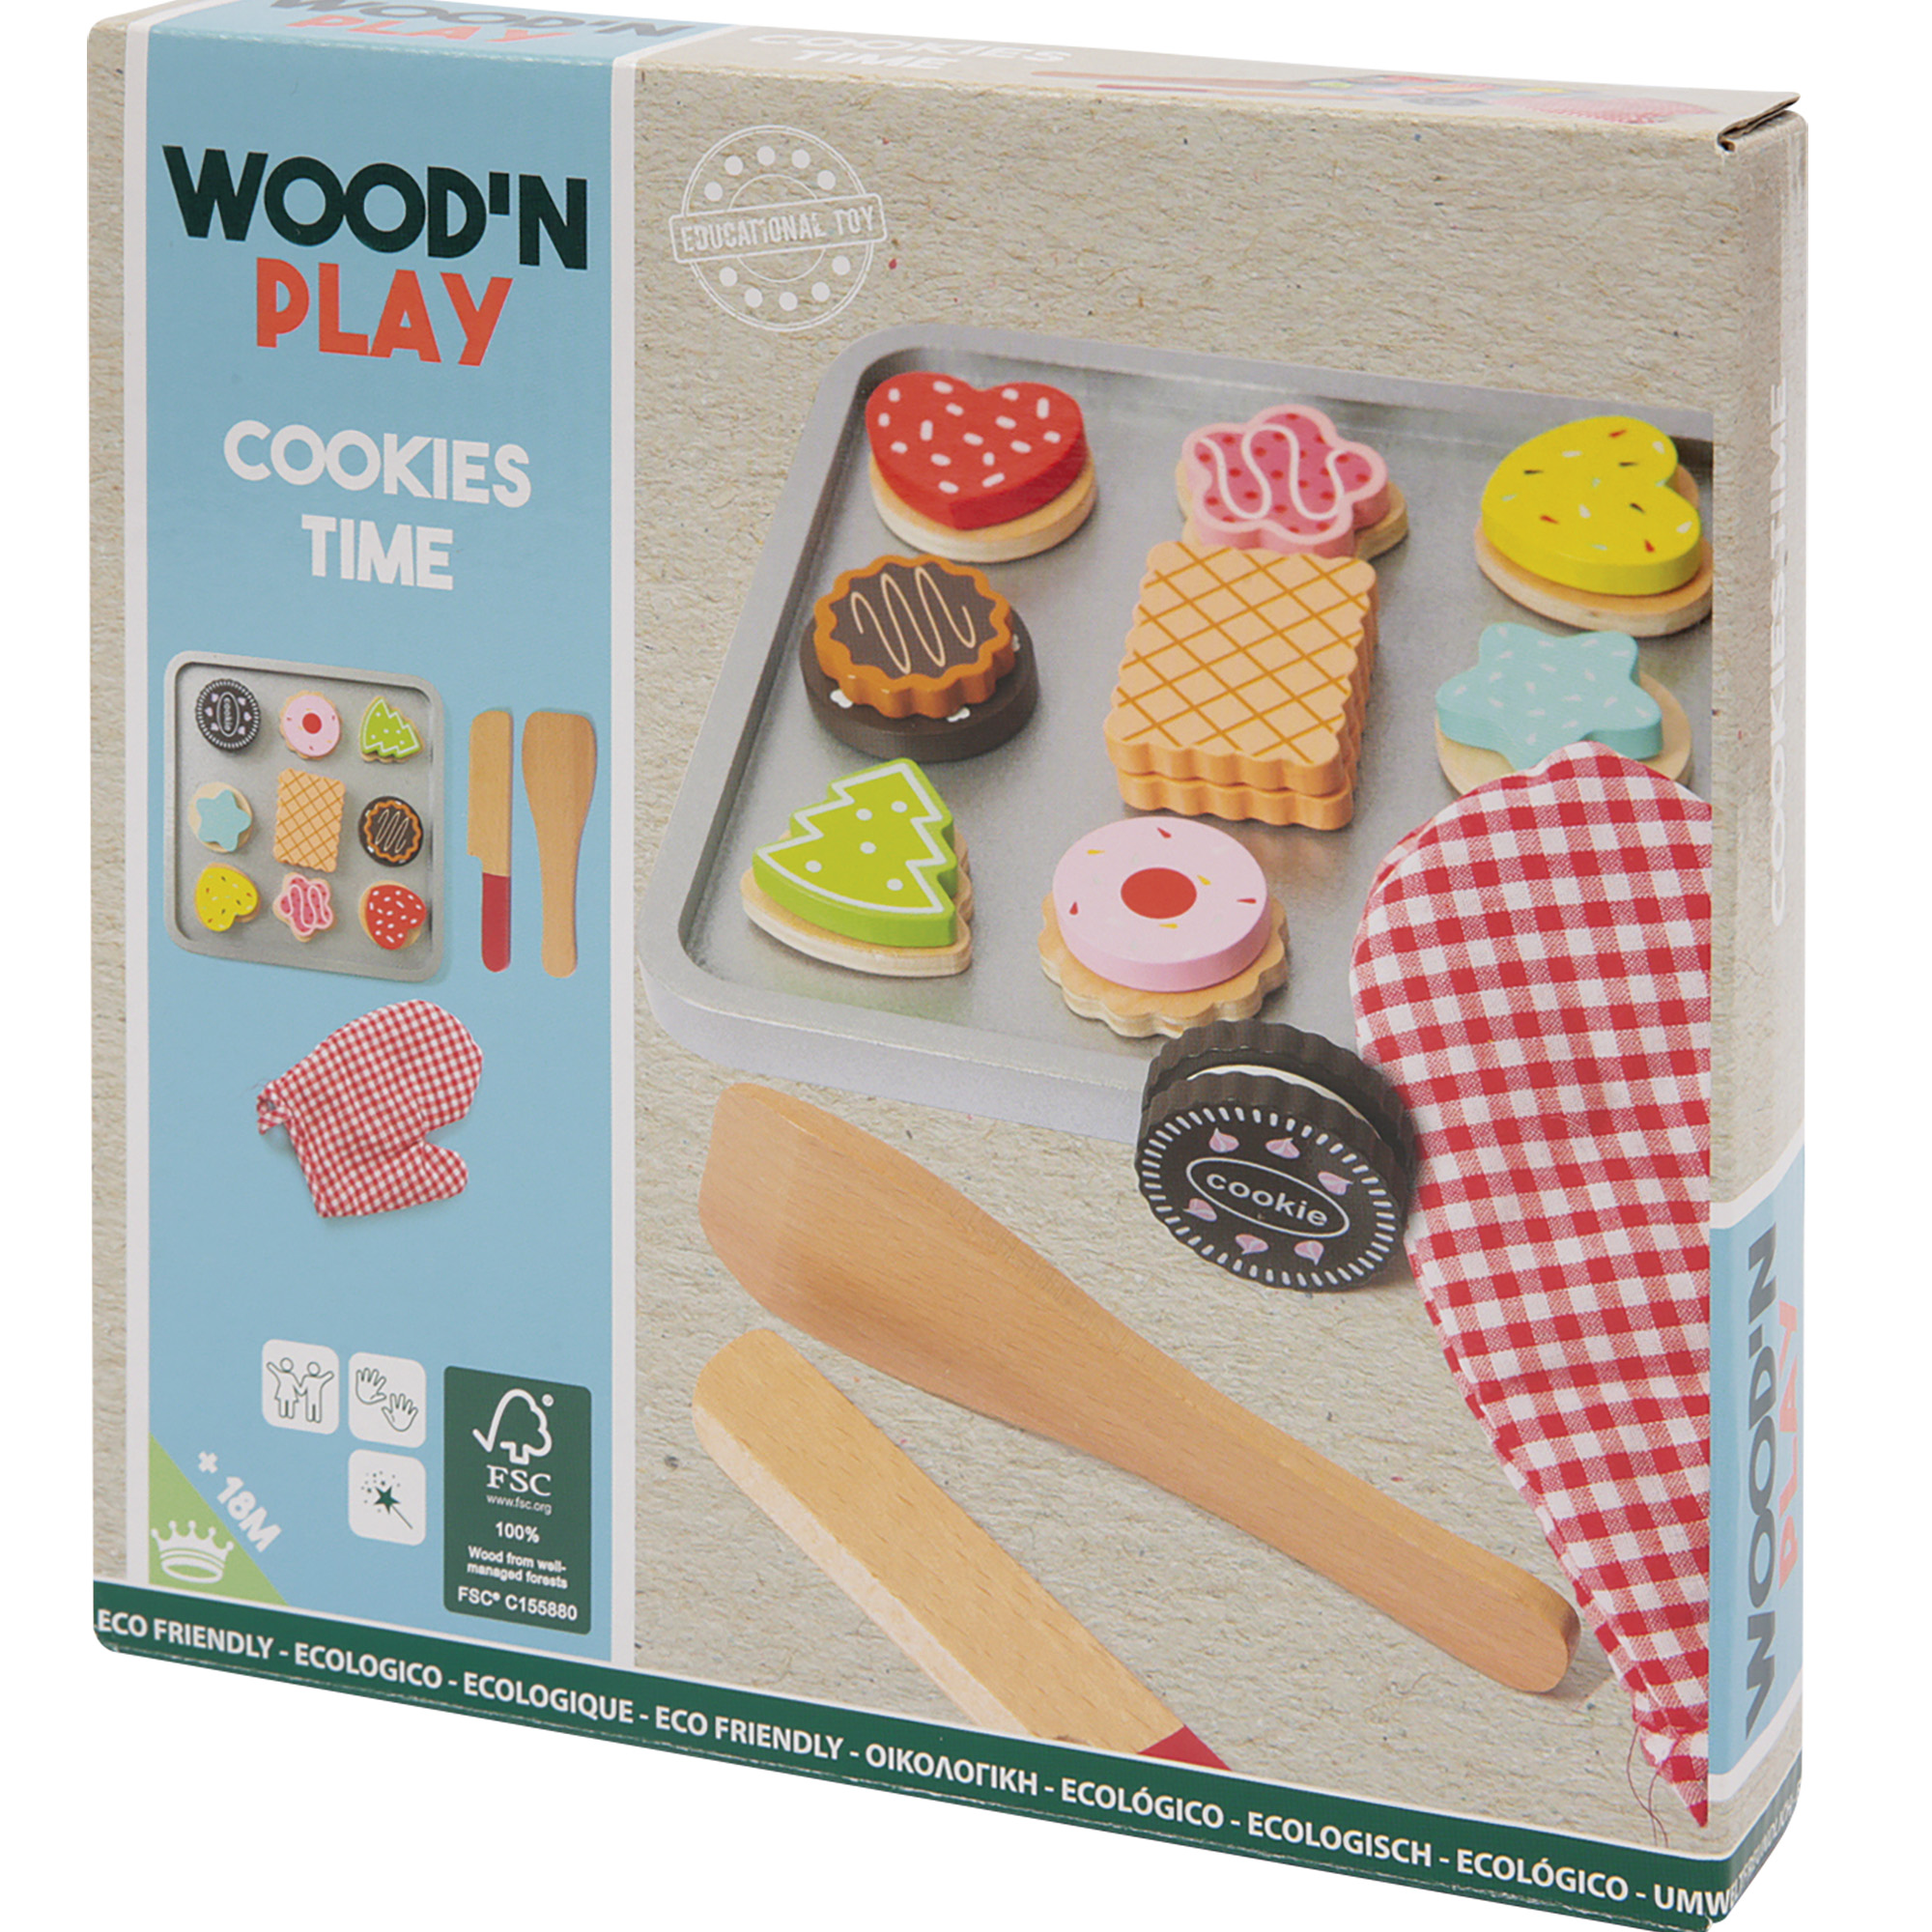 Teglia di biscotti wood n' play - Wood n' Play